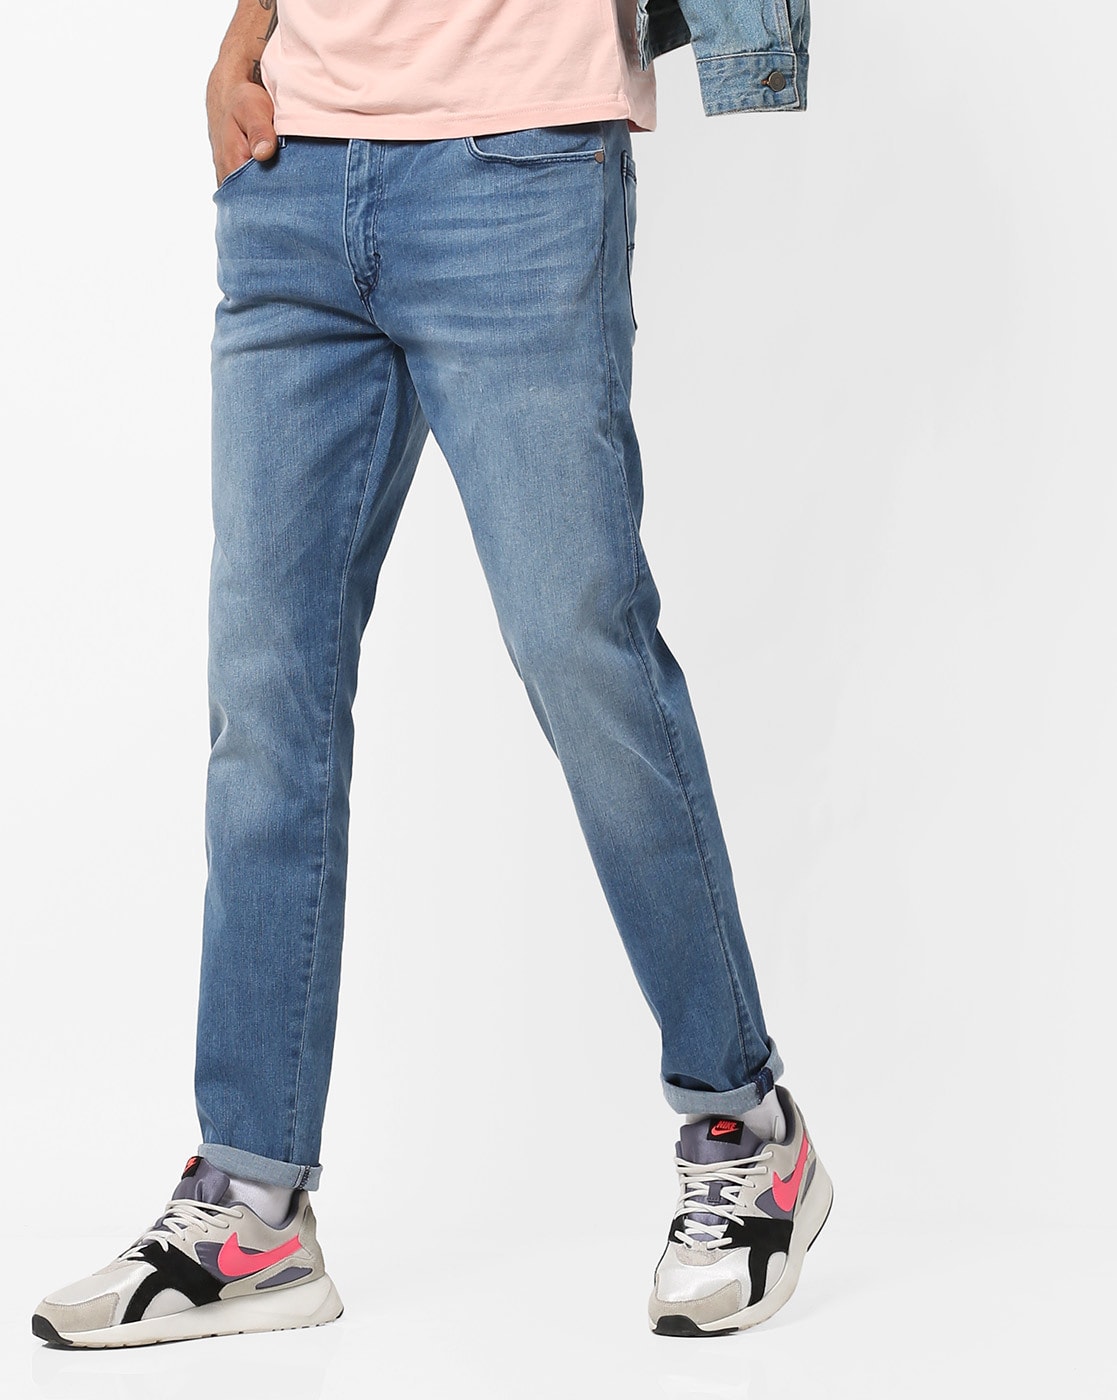 redloop jeans